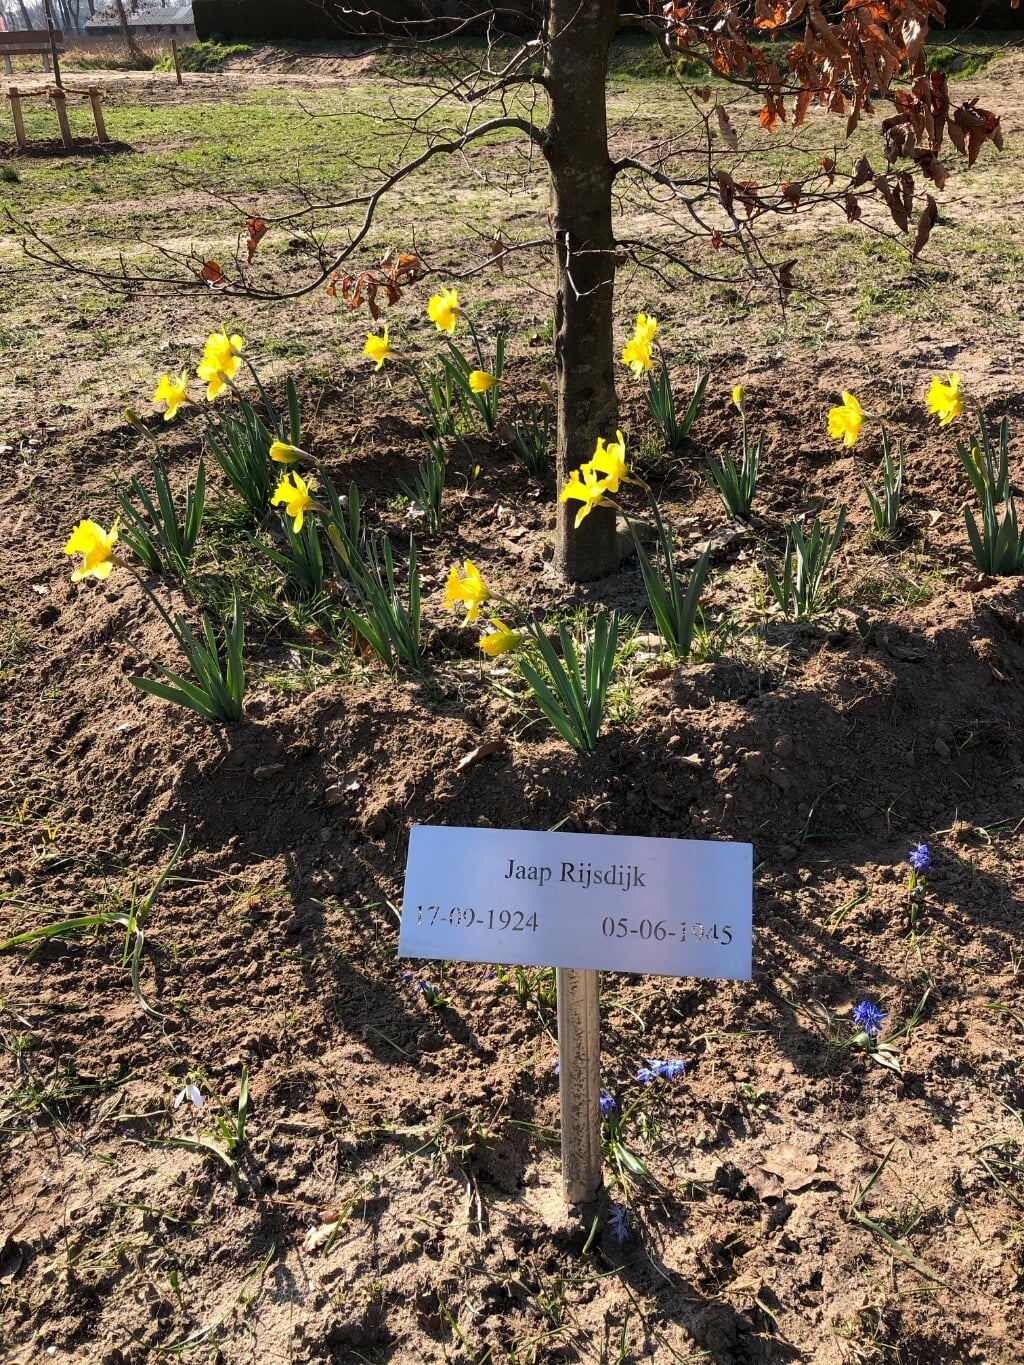 De narcissen ter herinnering aan Jaap Rijsdijk, die in de oorlog een bos van deze gele voorjaarsbloemen gaf aan de Geesterense Gerda Hietland. Foto: PR